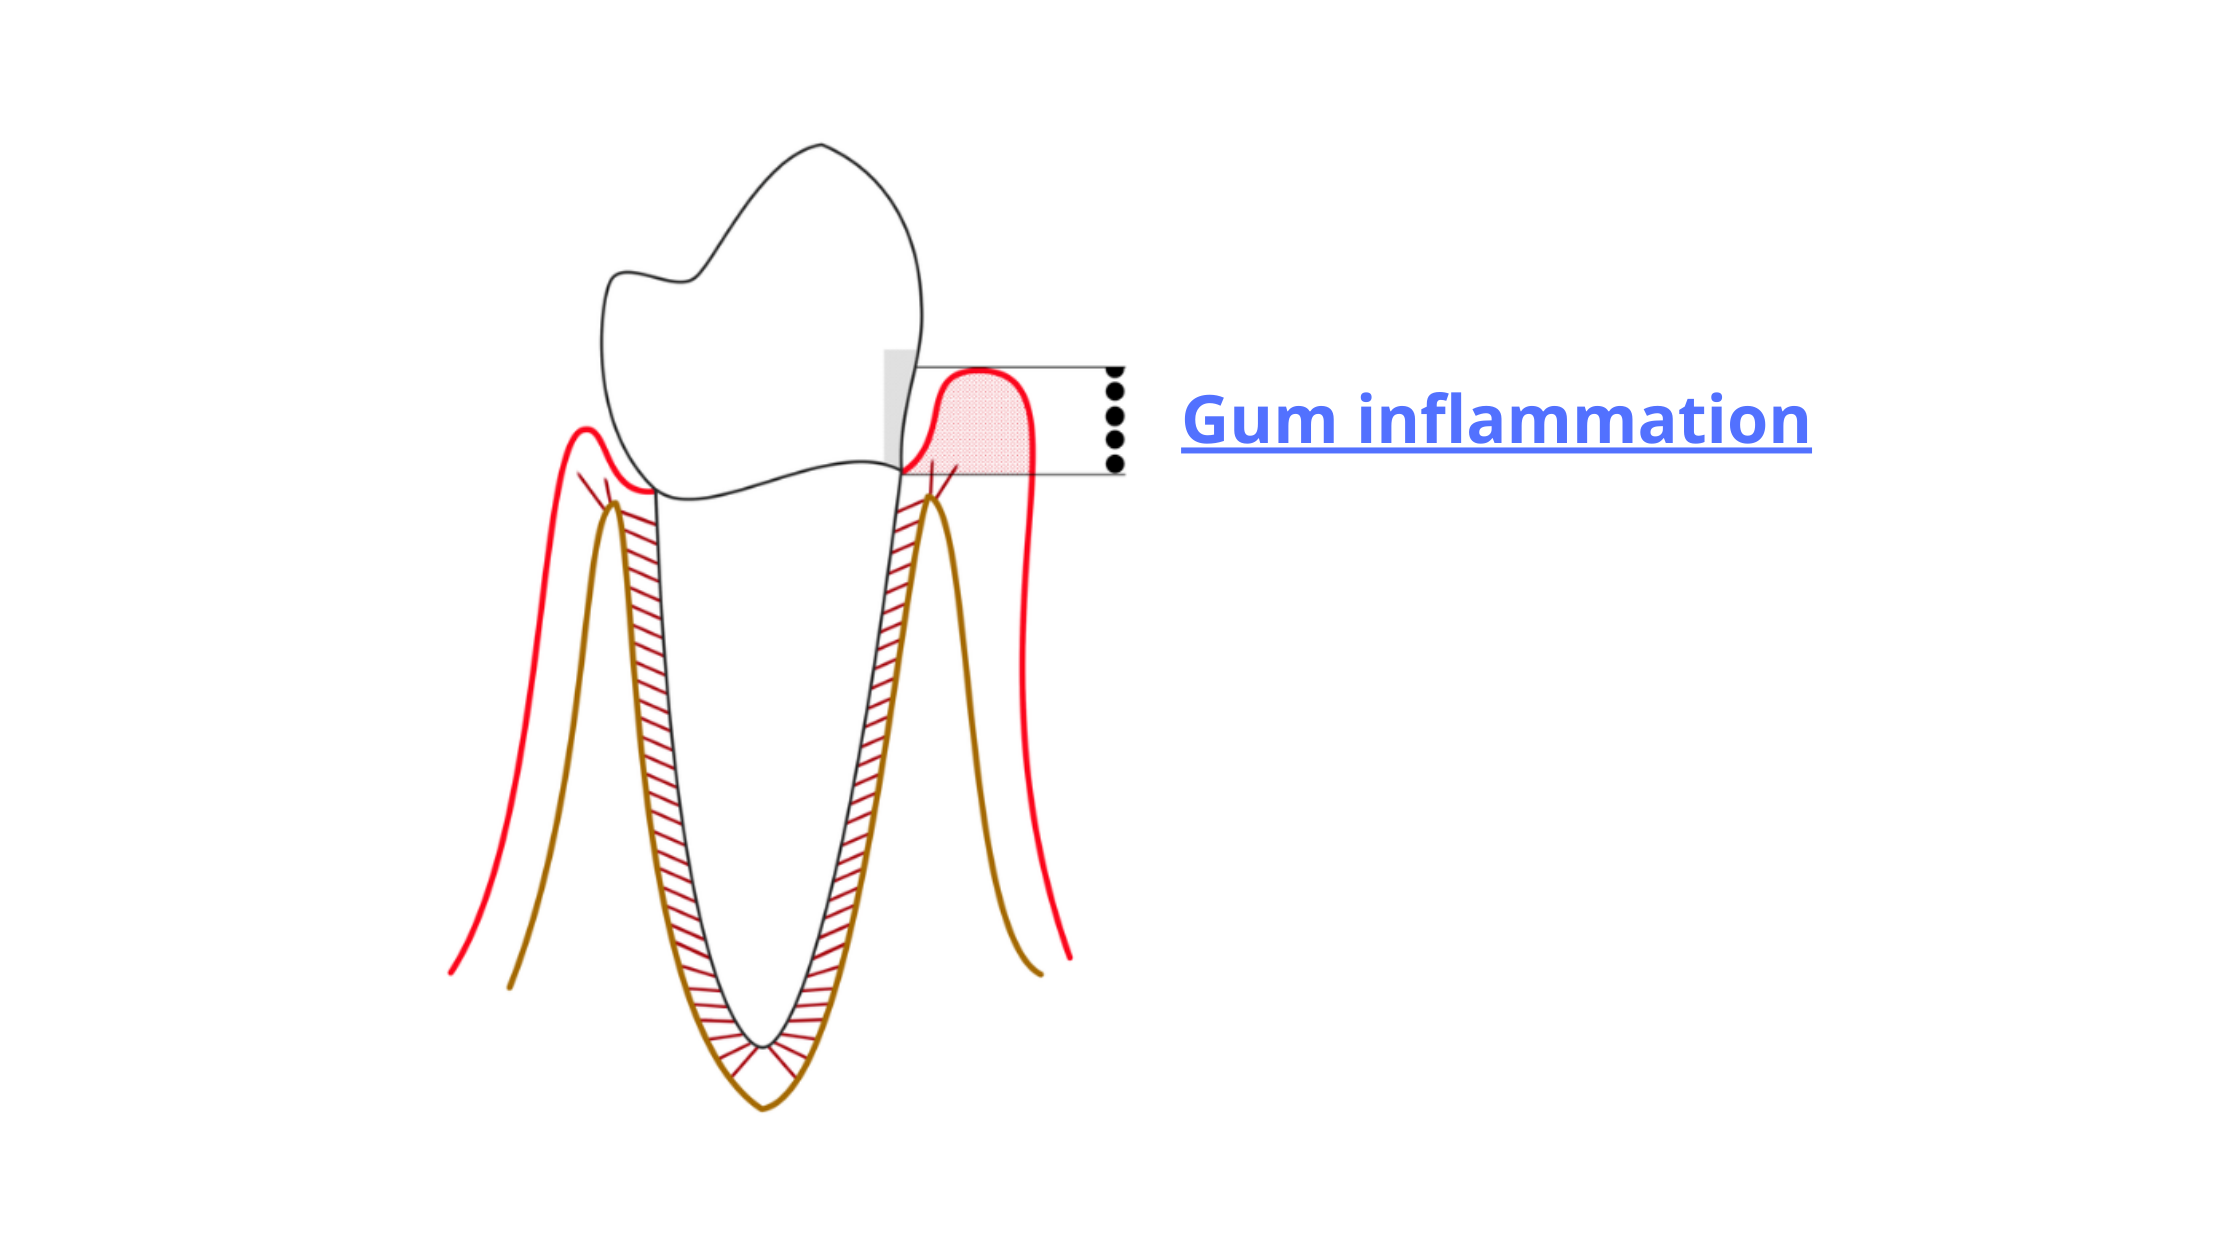 Initial stage of gum disease: gingivitis